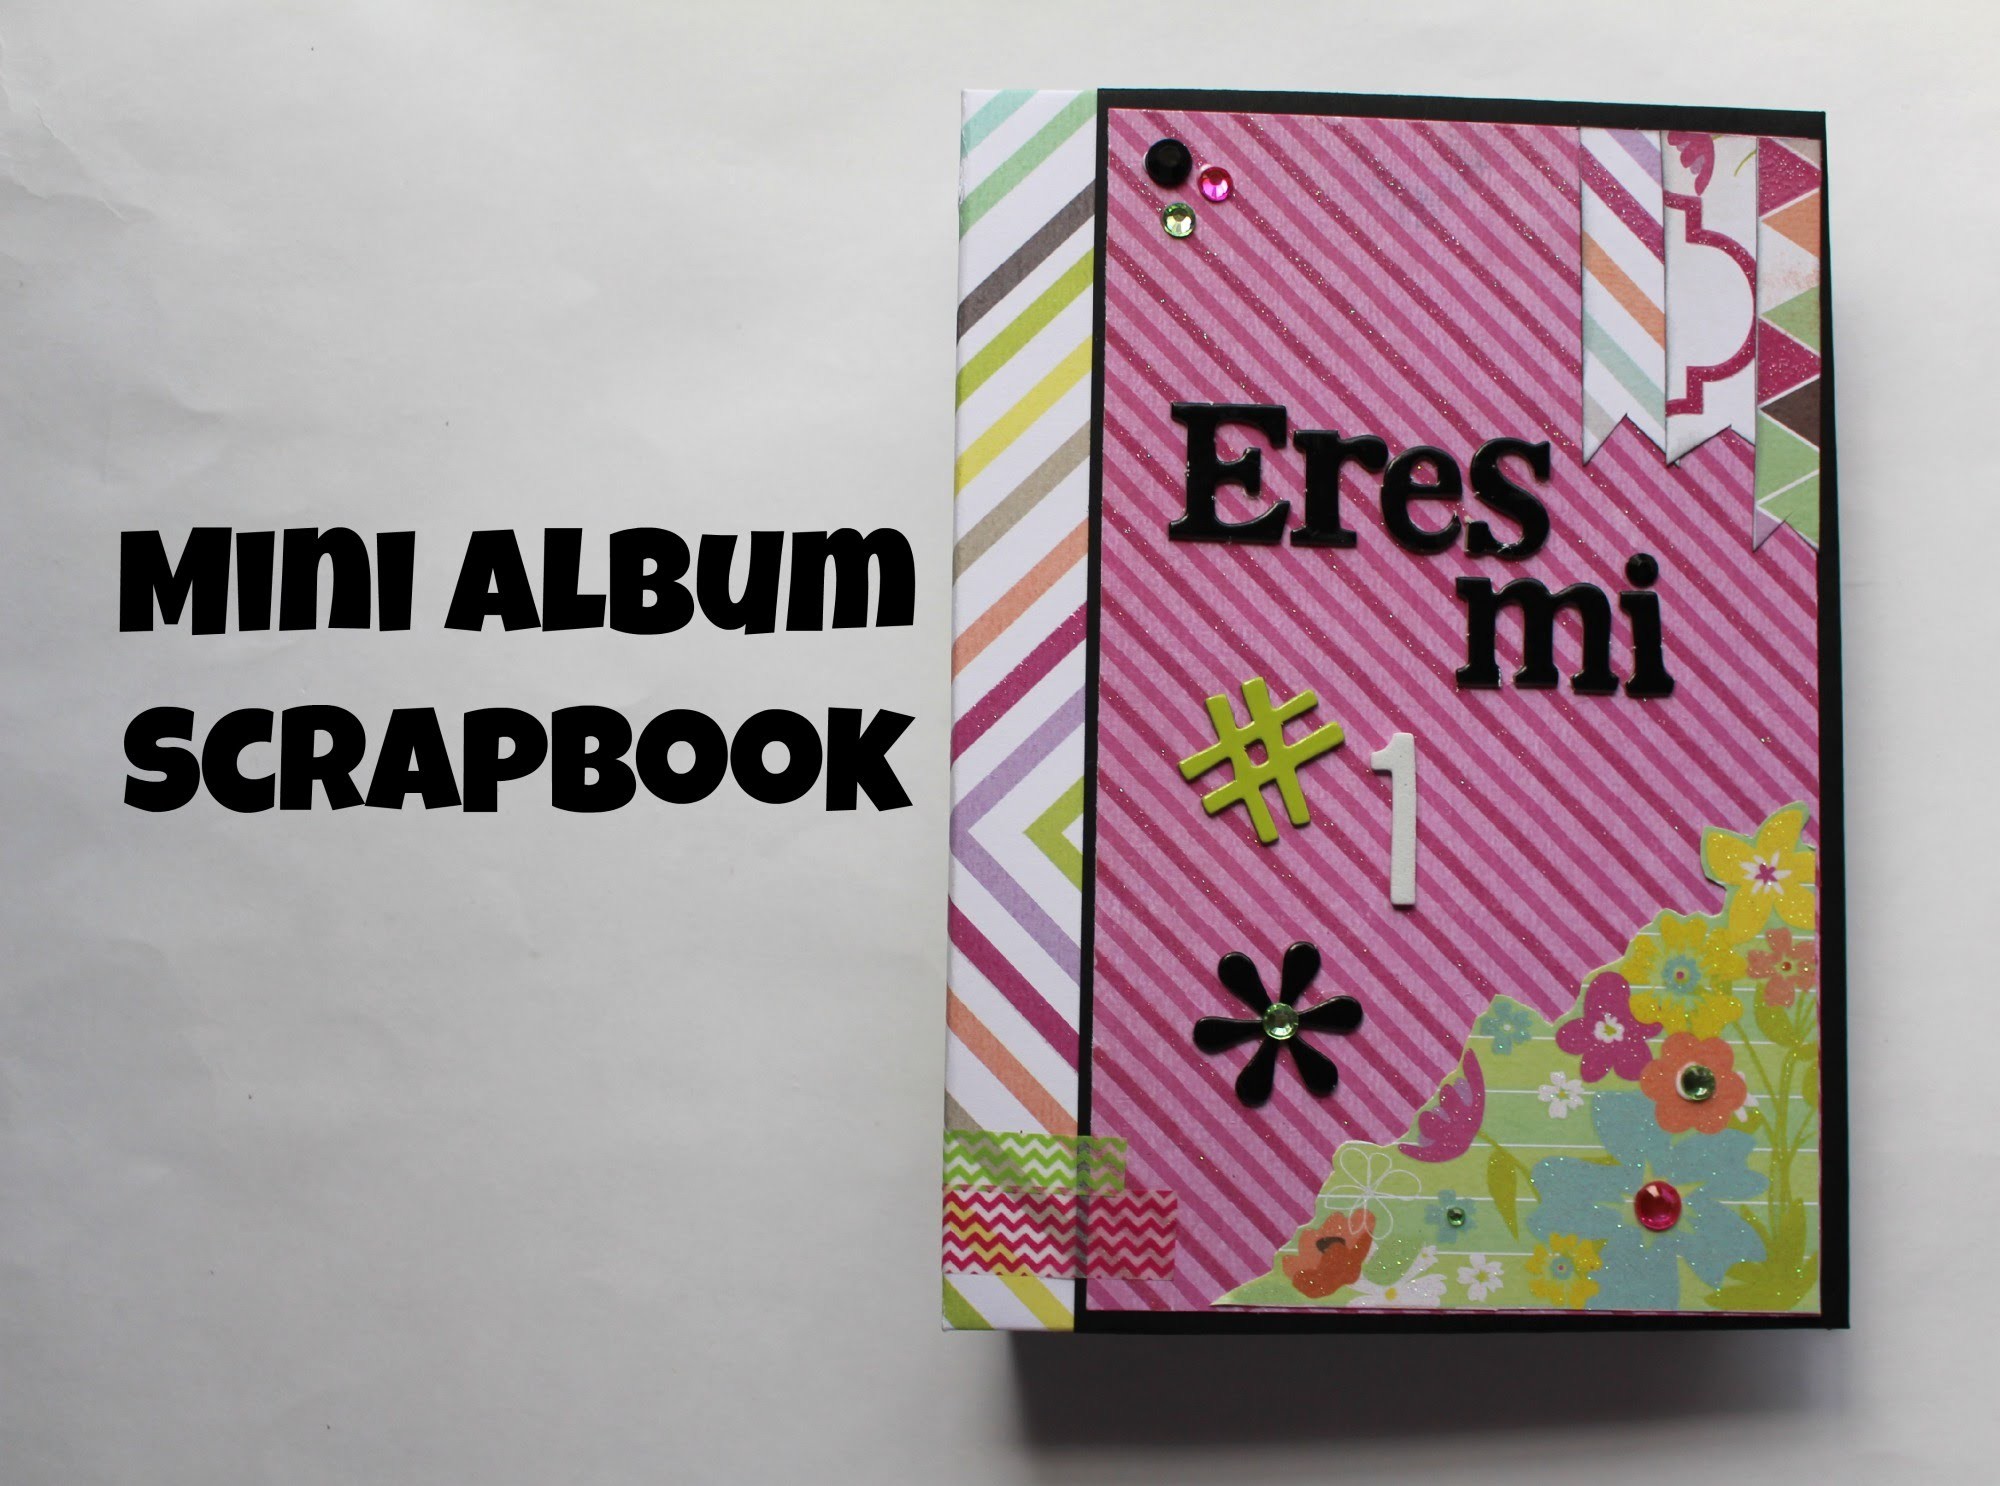 Mini Album Scrapbook Eres mi Numero. .  Srapbook en español